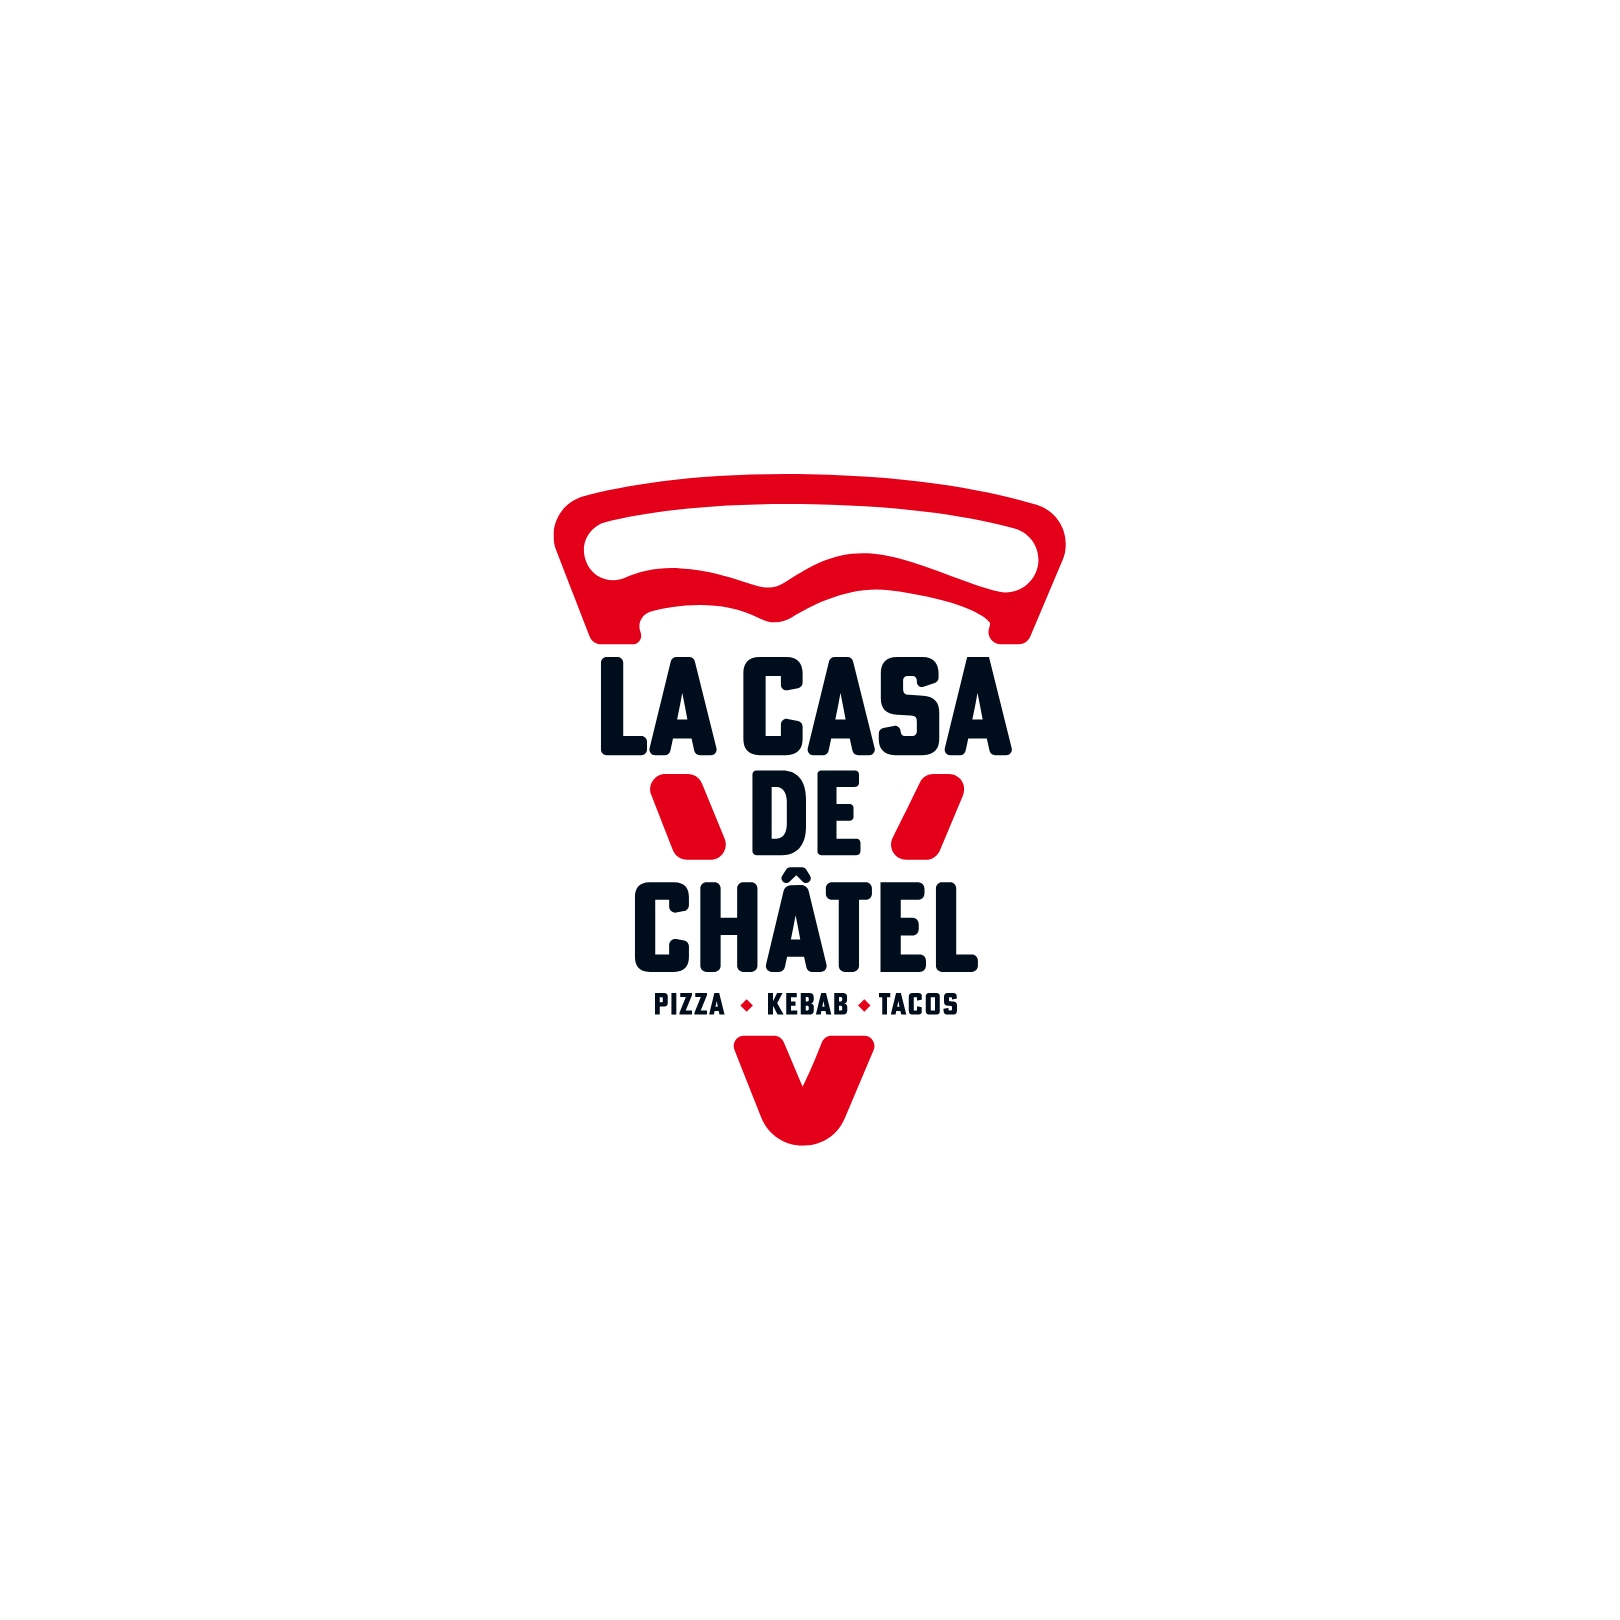 تصميم شعار LA CASA DE CHATEL